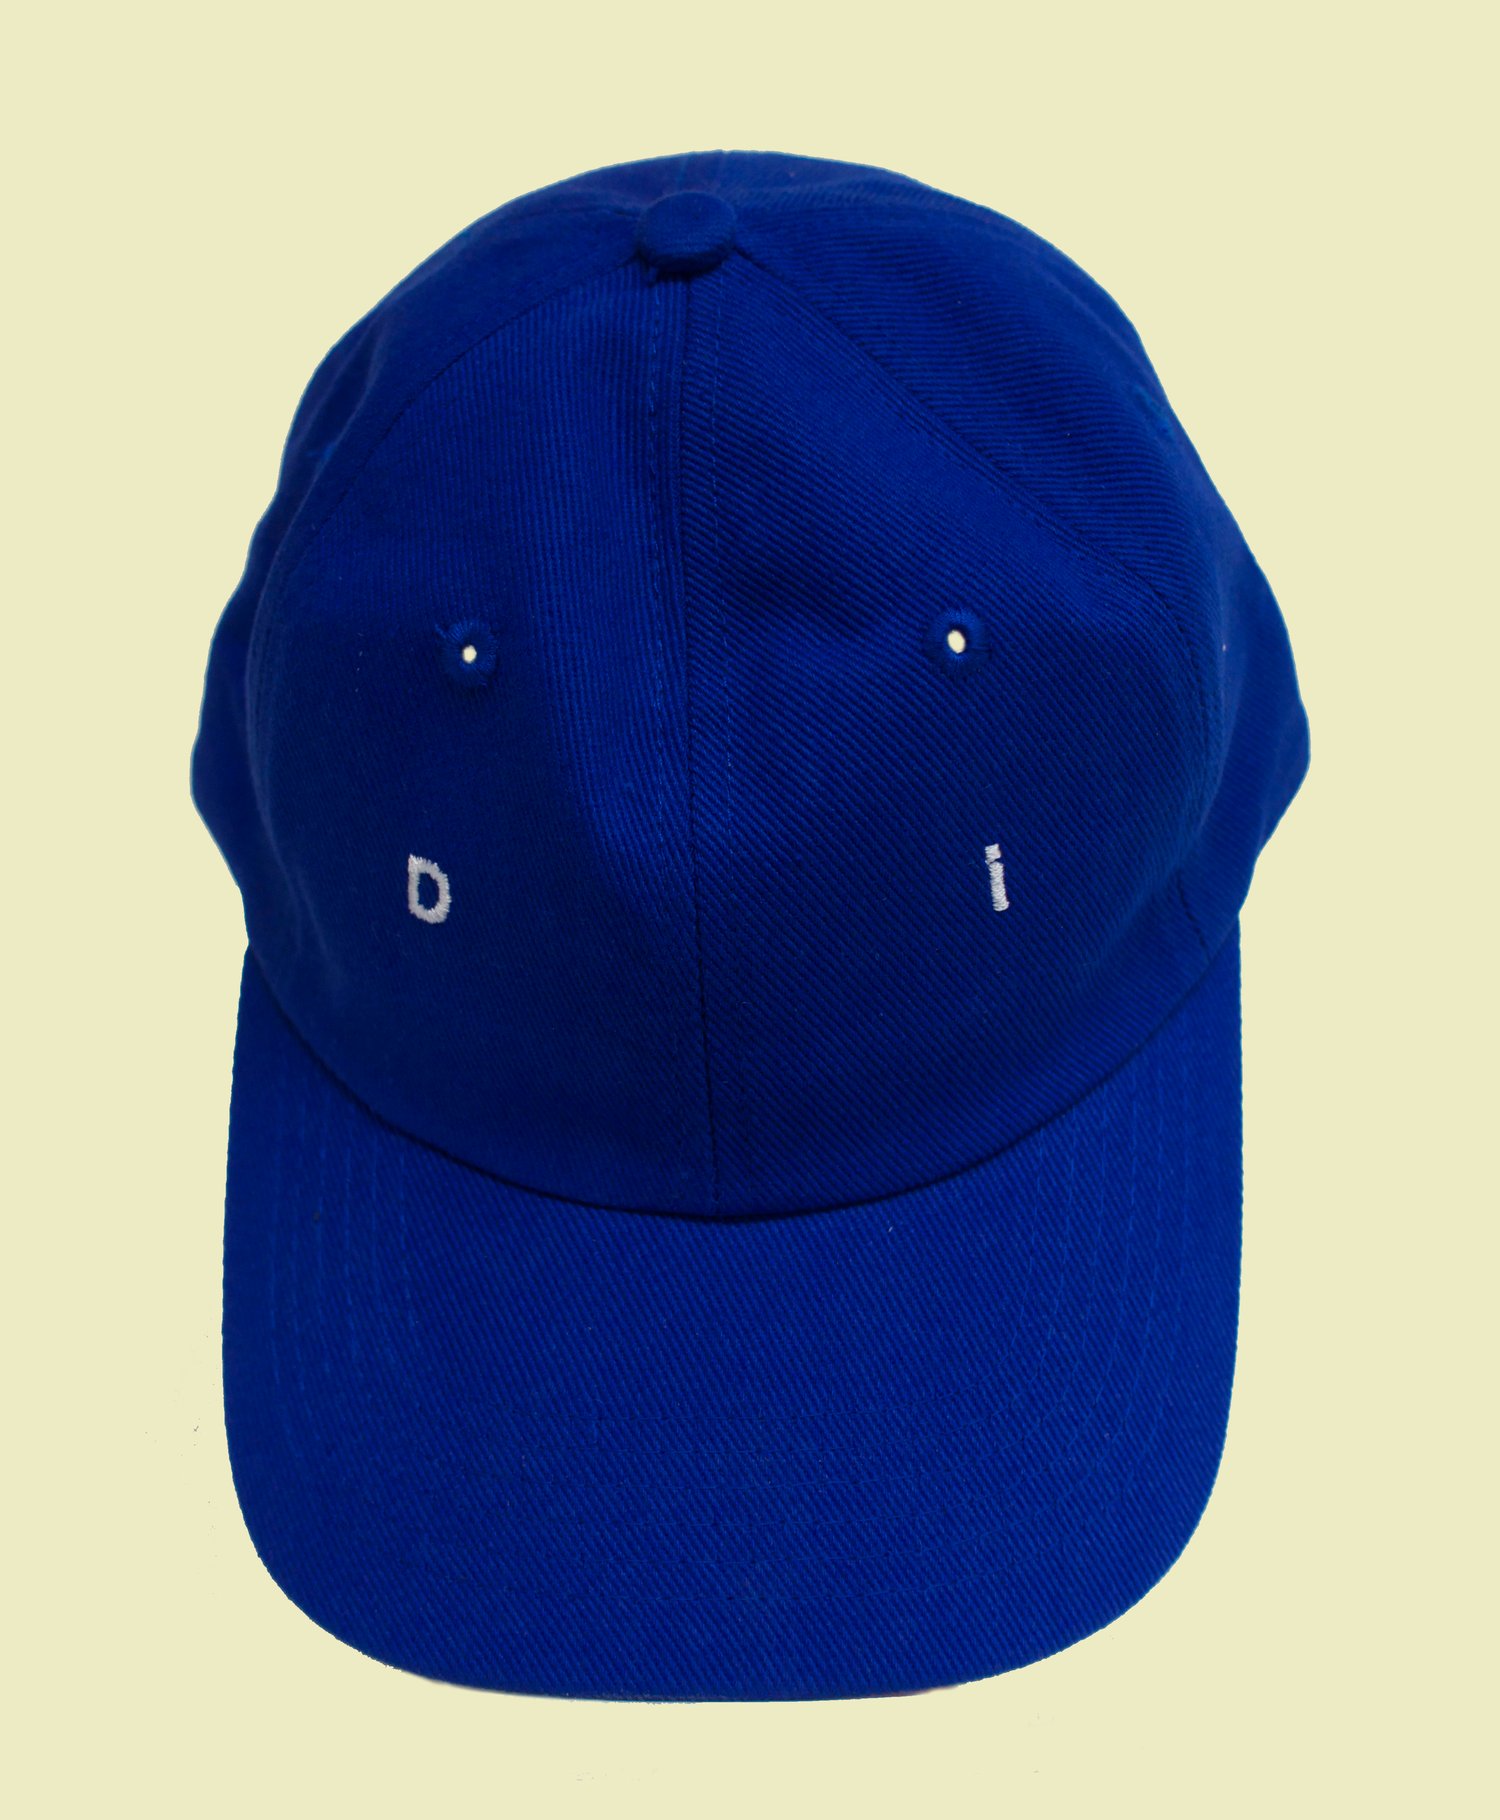 Image of di hat